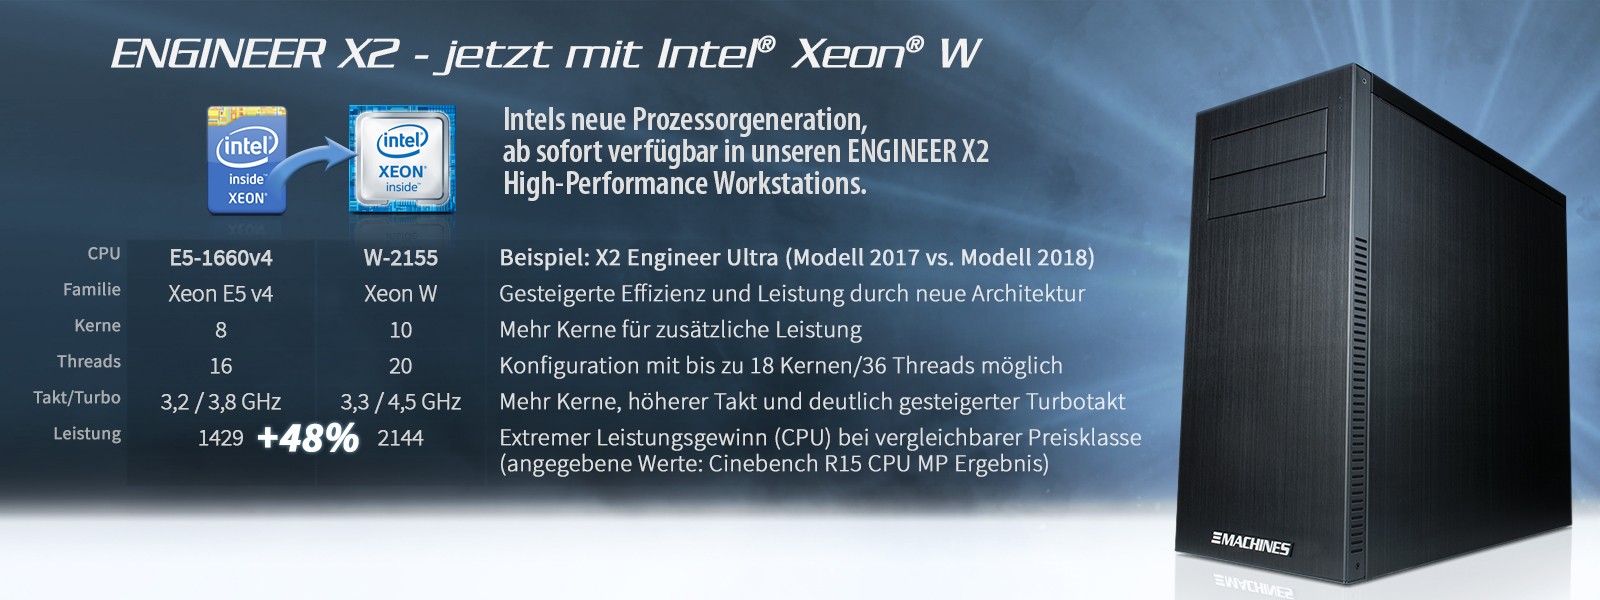 ENGINEER X2 WORKSTATIONS mit neuster Intel Prozessorgeneration